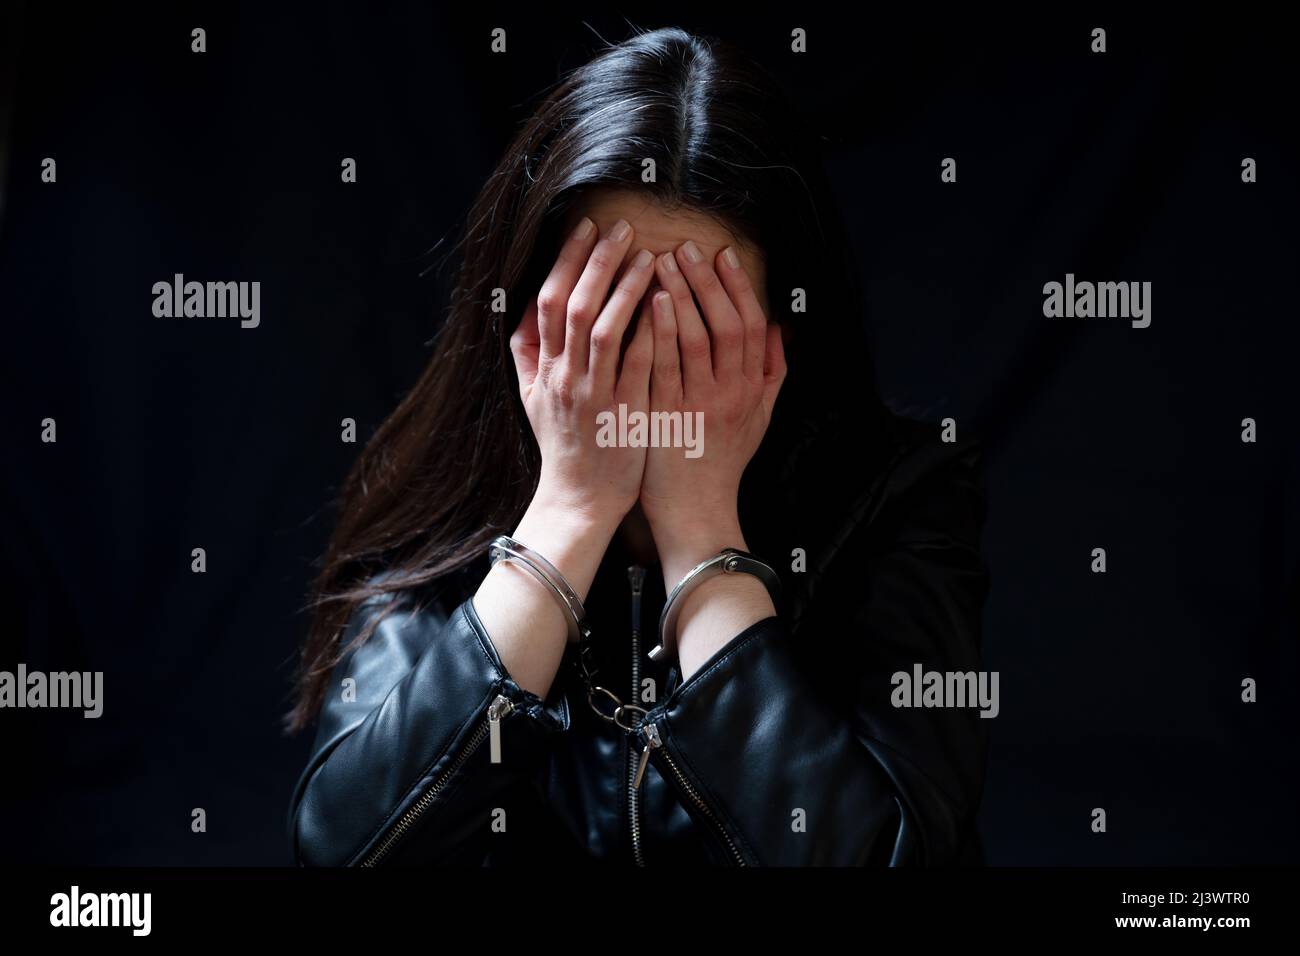 Una mujer joven cubre el ojo, triste y con cicatrices en una habitación oscura. Concepto de miedo y desesperación Foto de stock